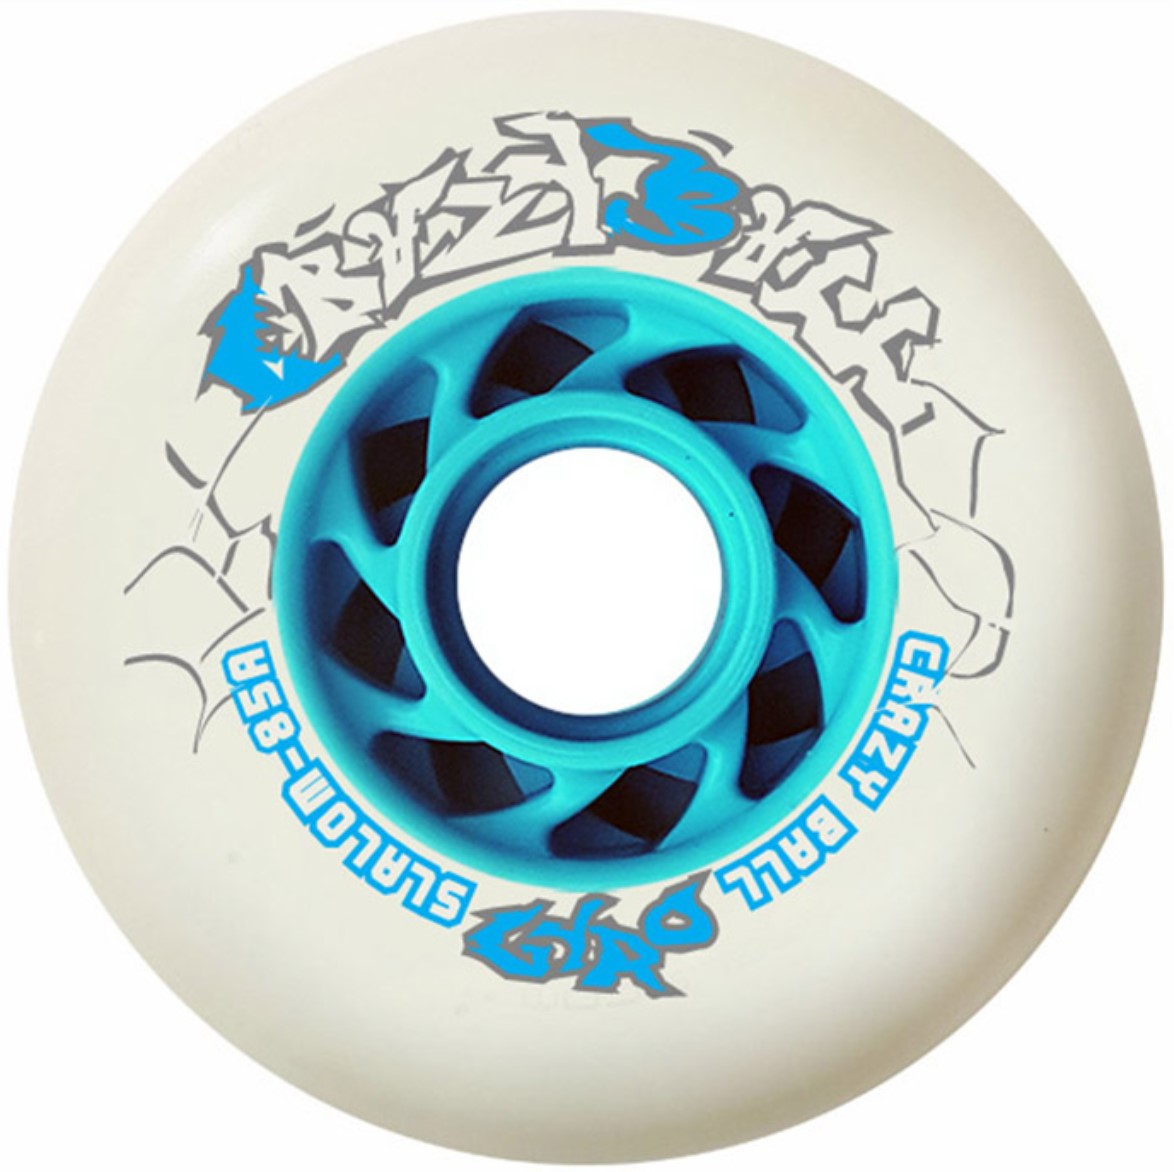 The white Gyro Crazyball speed slalom inlineskate wheel